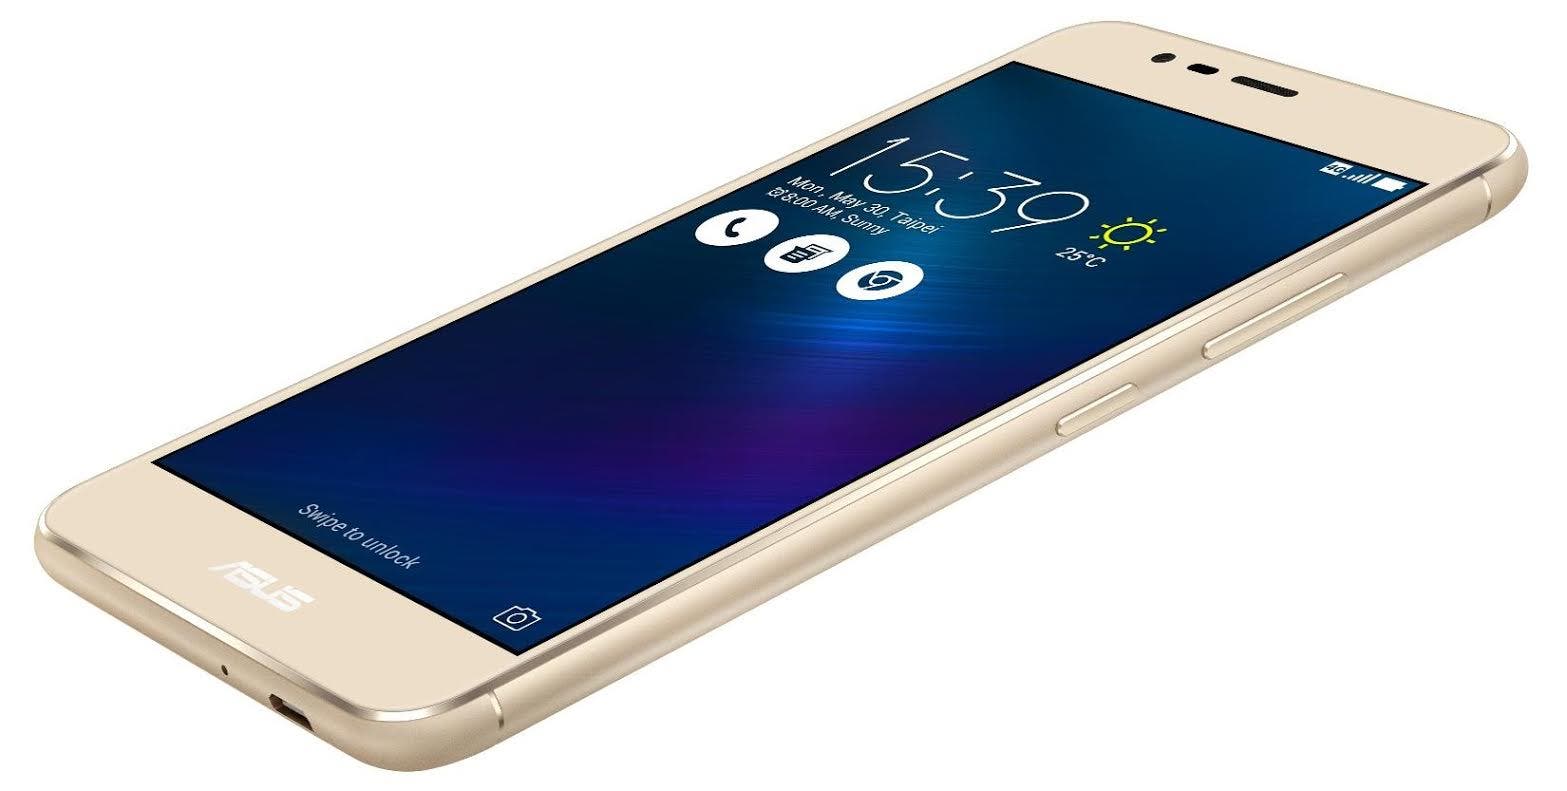 O smartphone “ASUS Zenfone 3” chega ao ao mercado brasileiro no dia 25 de outubro